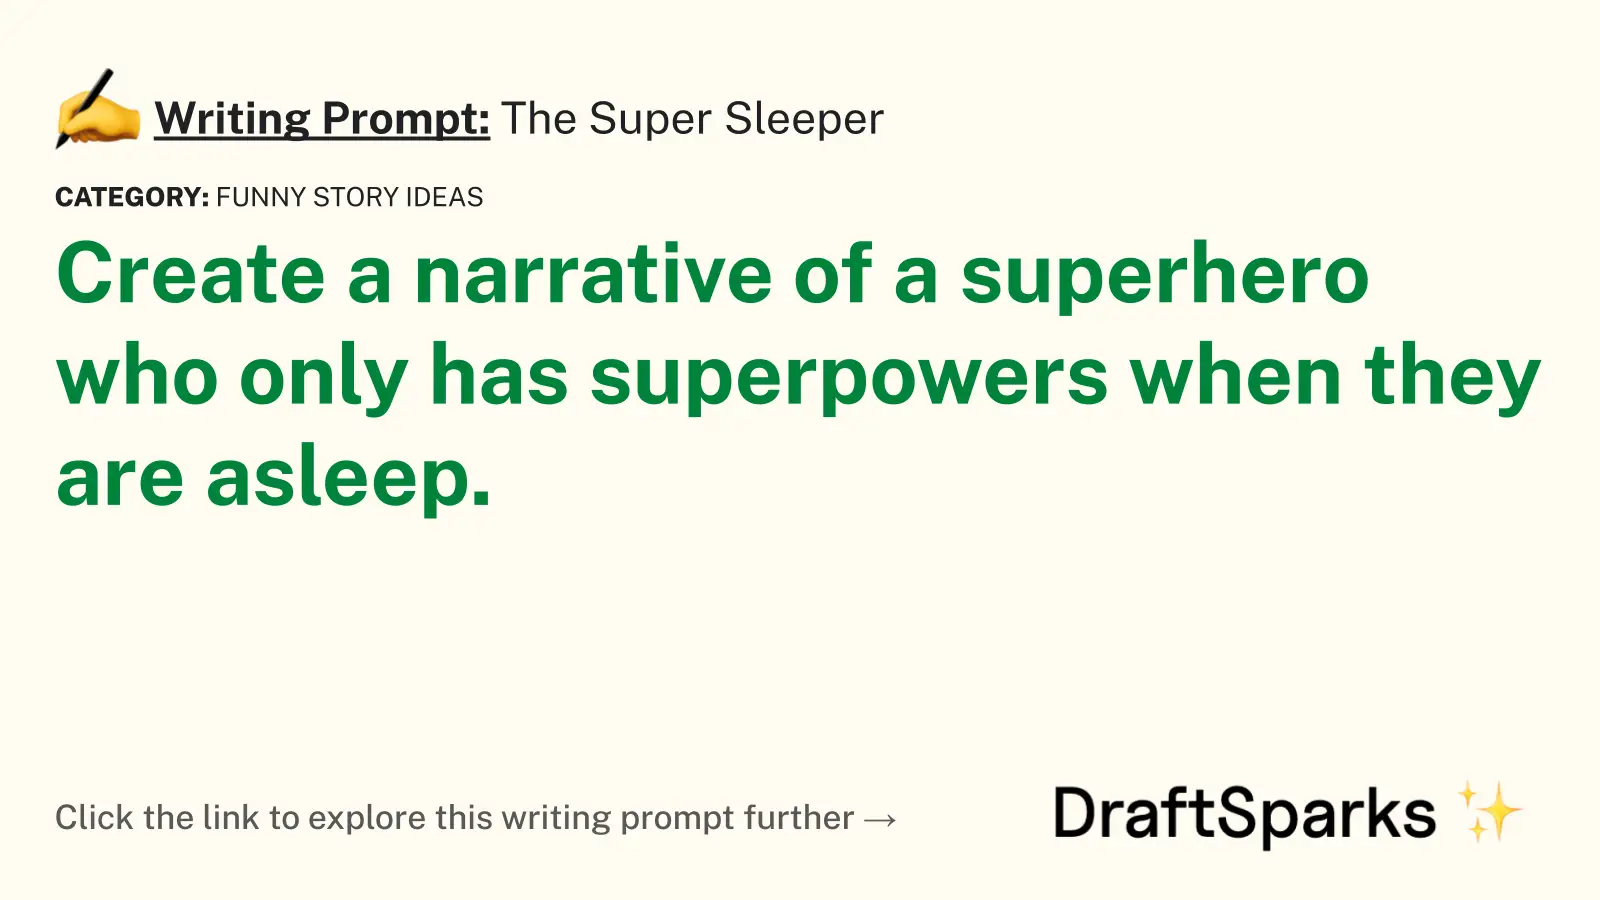 The Super Sleeper